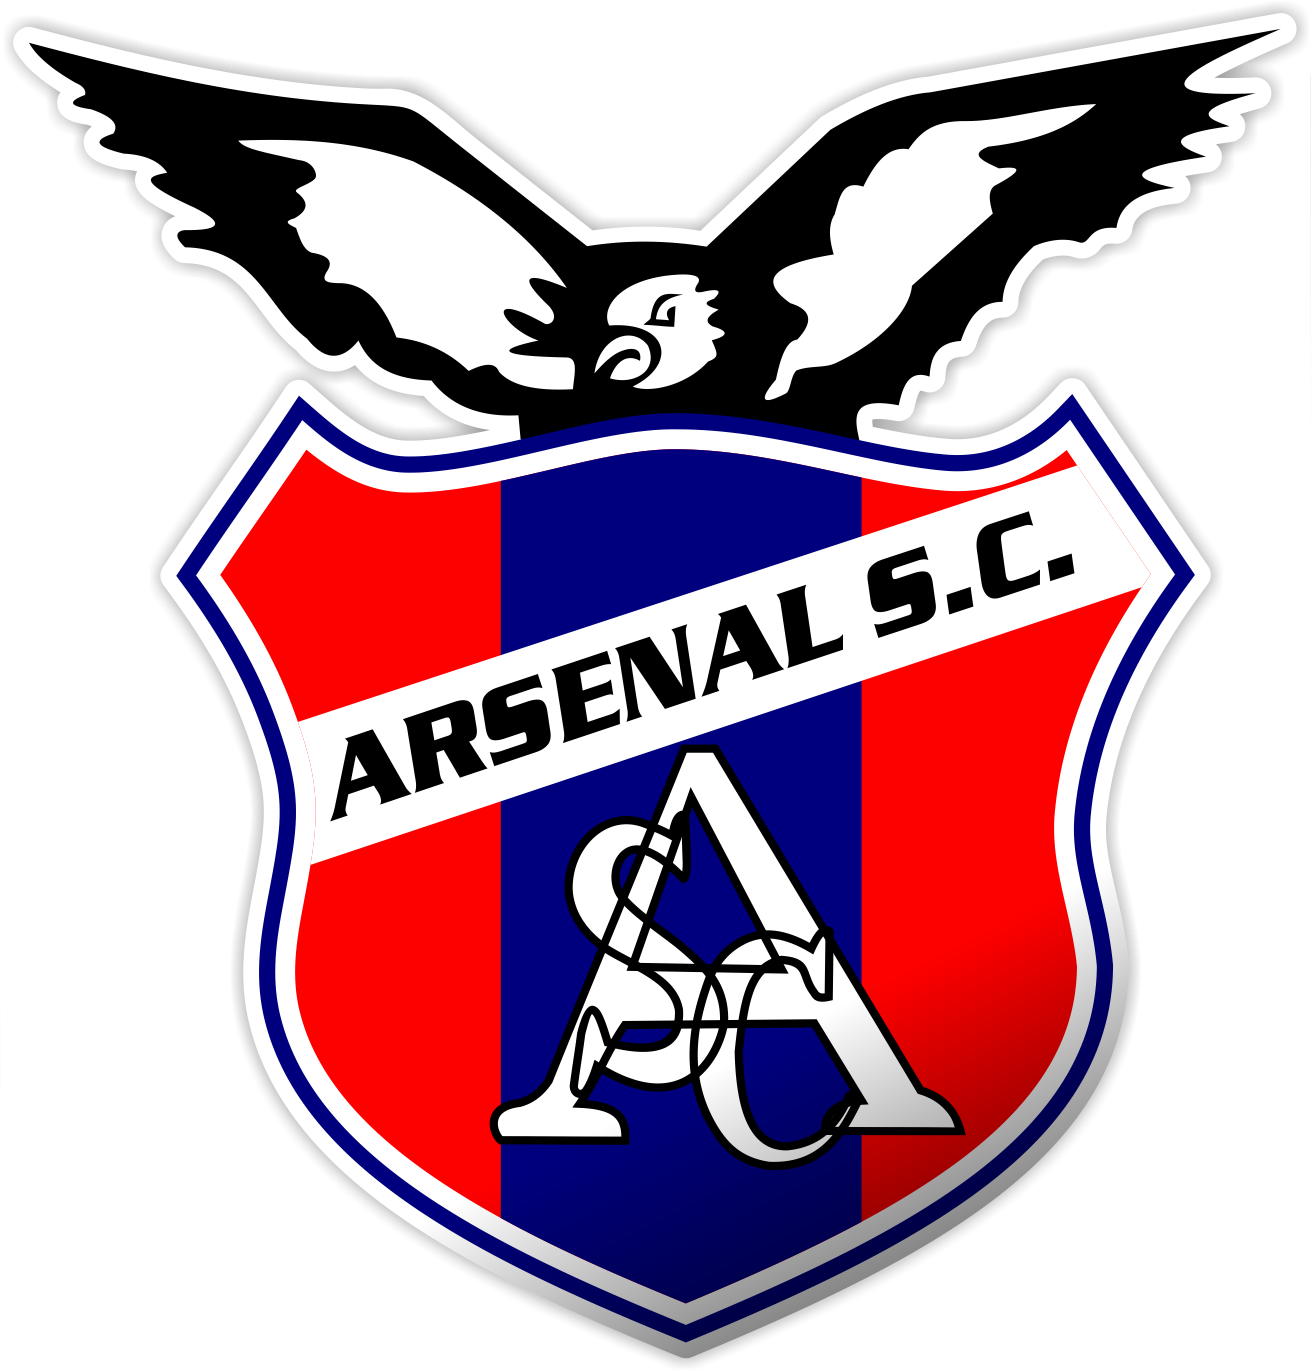 Imagens do logotipo do Arsenal F.C.